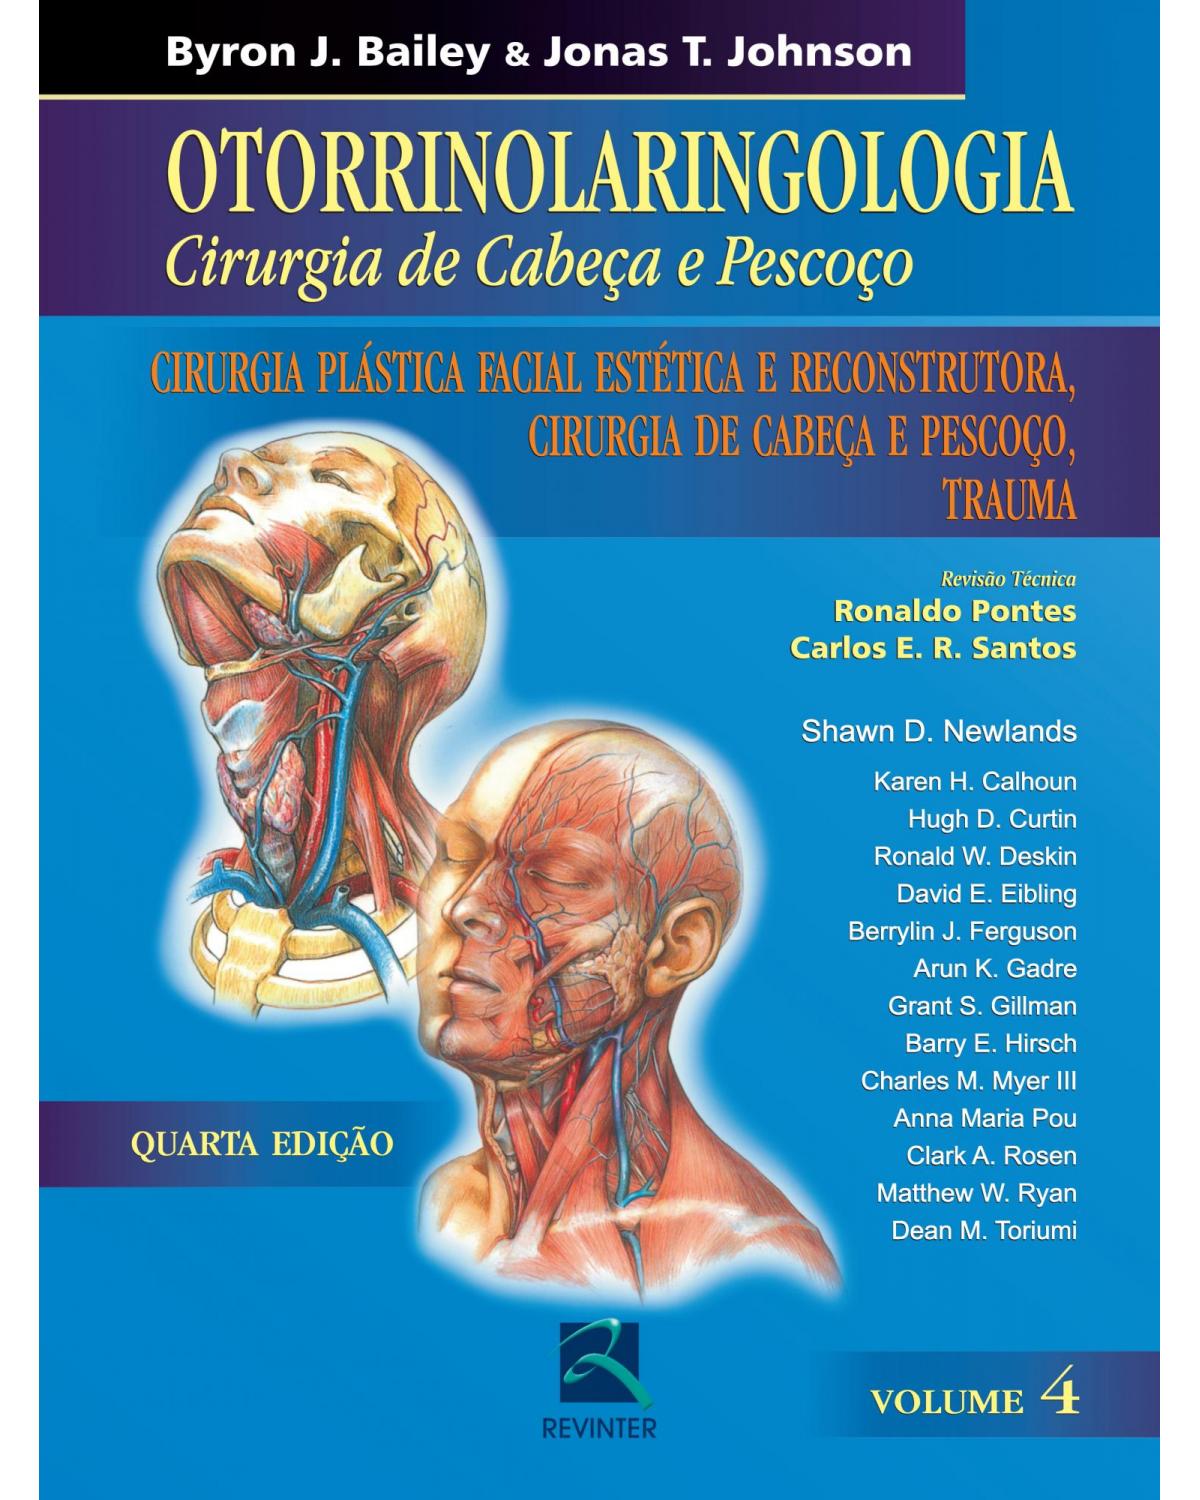 Otorrinolaringologia - Volume 4: cirurgia de cabeça e pescoço - Cirurgia plástica facial estética e reconstrutora, cirurgia de cabeça e pescoço, trauma - 4ª Edição | 2010